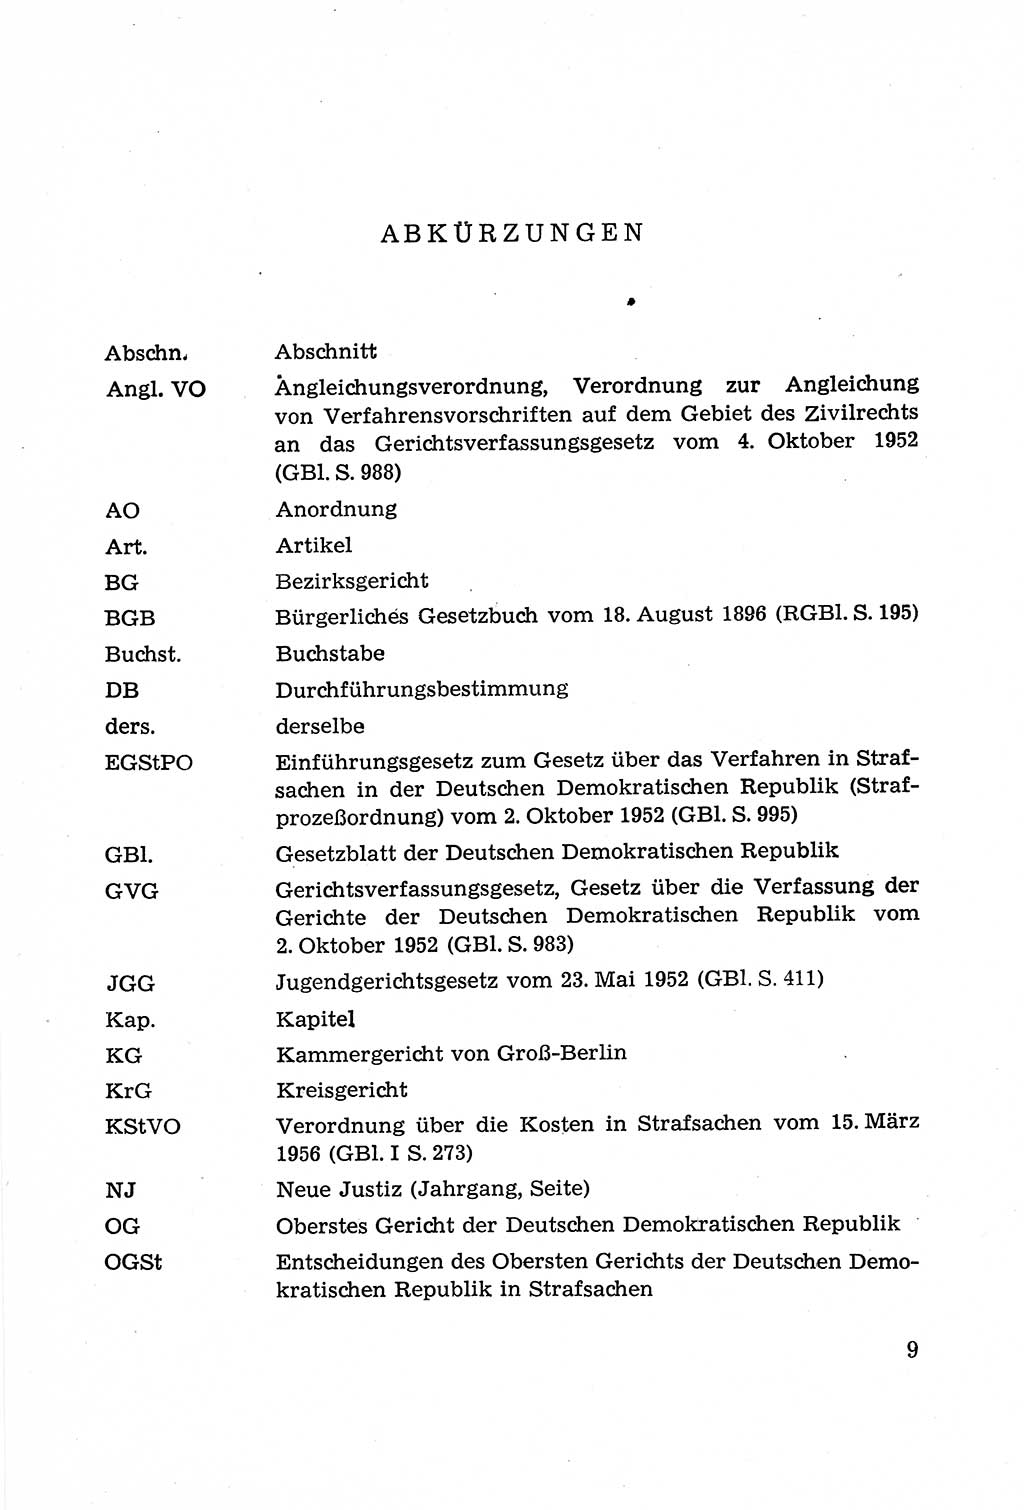 Leitfaden des Strafprozeßrechts der Deutschen Demokratischen Republik (DDR) 1959, Seite 9 (LF StPR DDR 1959, S. 9)